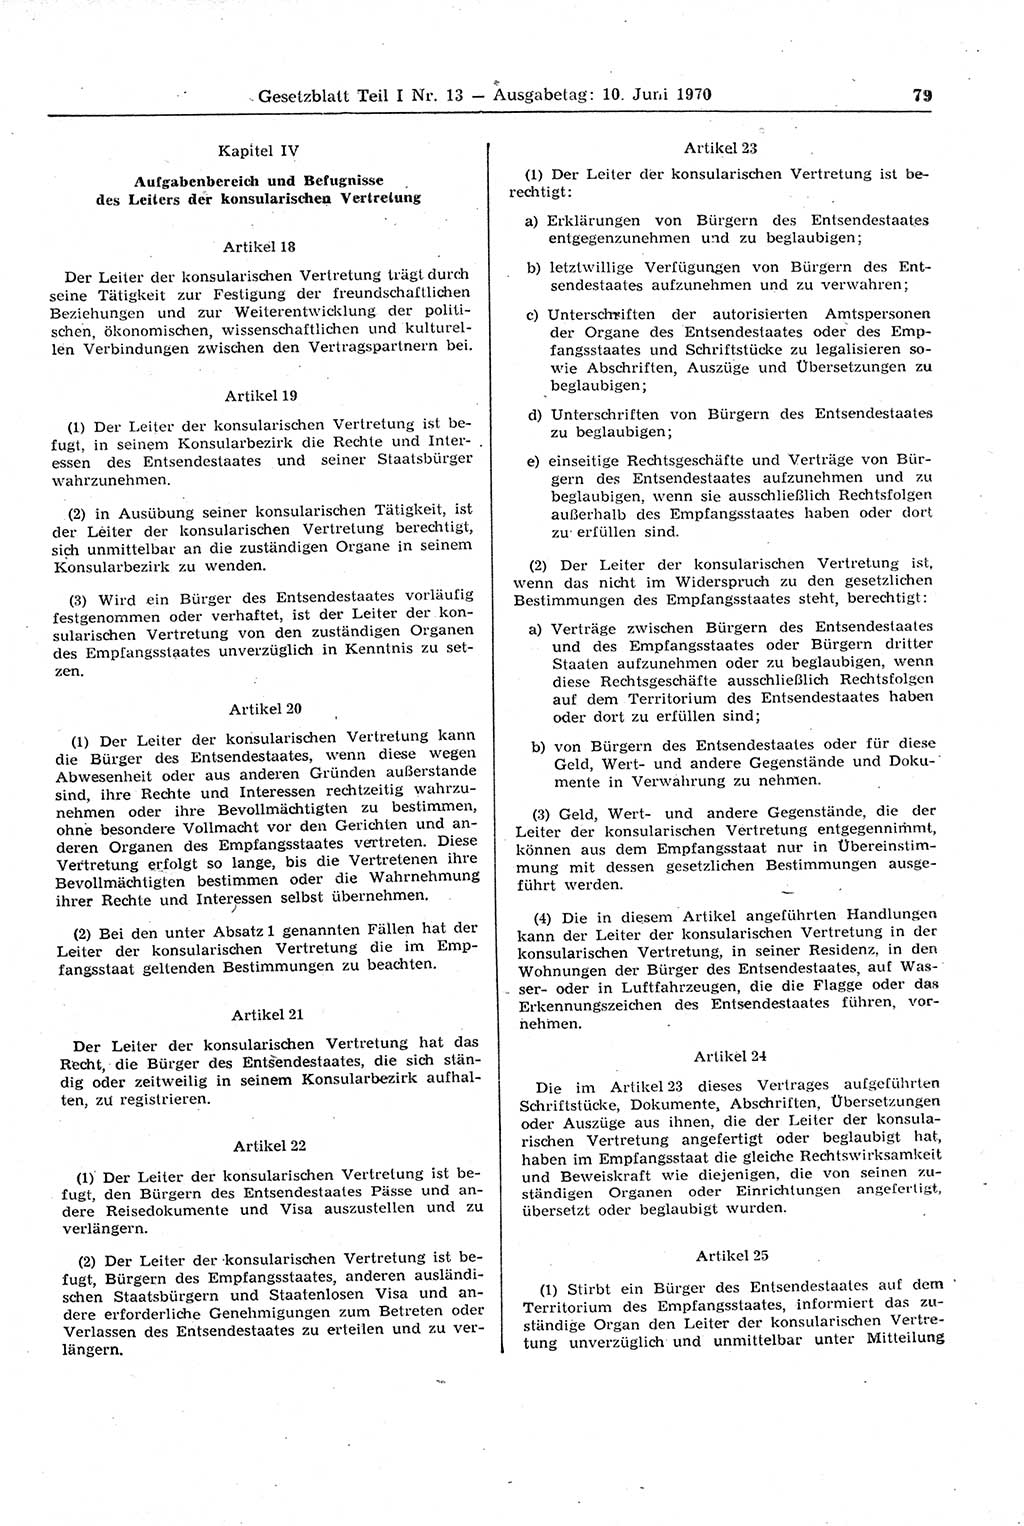 Gesetzblatt (GBl.) der Deutschen Demokratischen Republik (DDR) Teil Ⅰ 1970, Seite 79 (GBl. DDR Ⅰ 1970, S. 79)